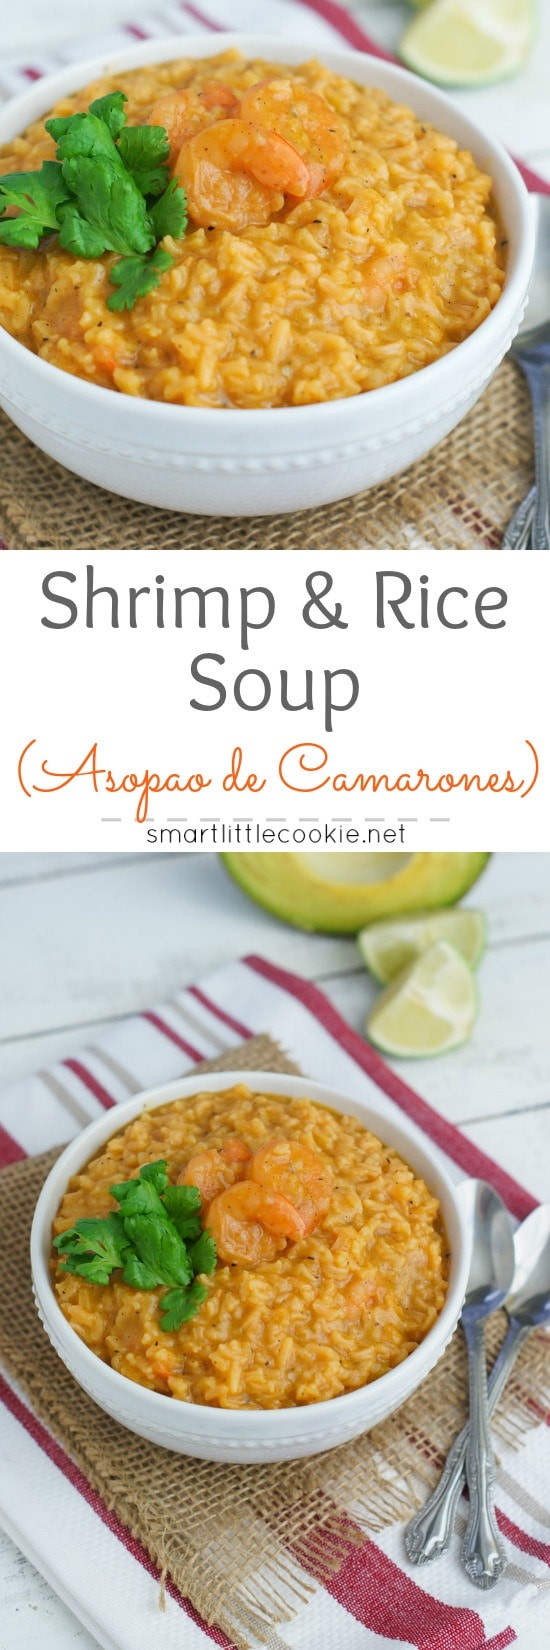 Shrimp And Rice Soup
 Shrimp and Rice Soup Asopao de Camarones